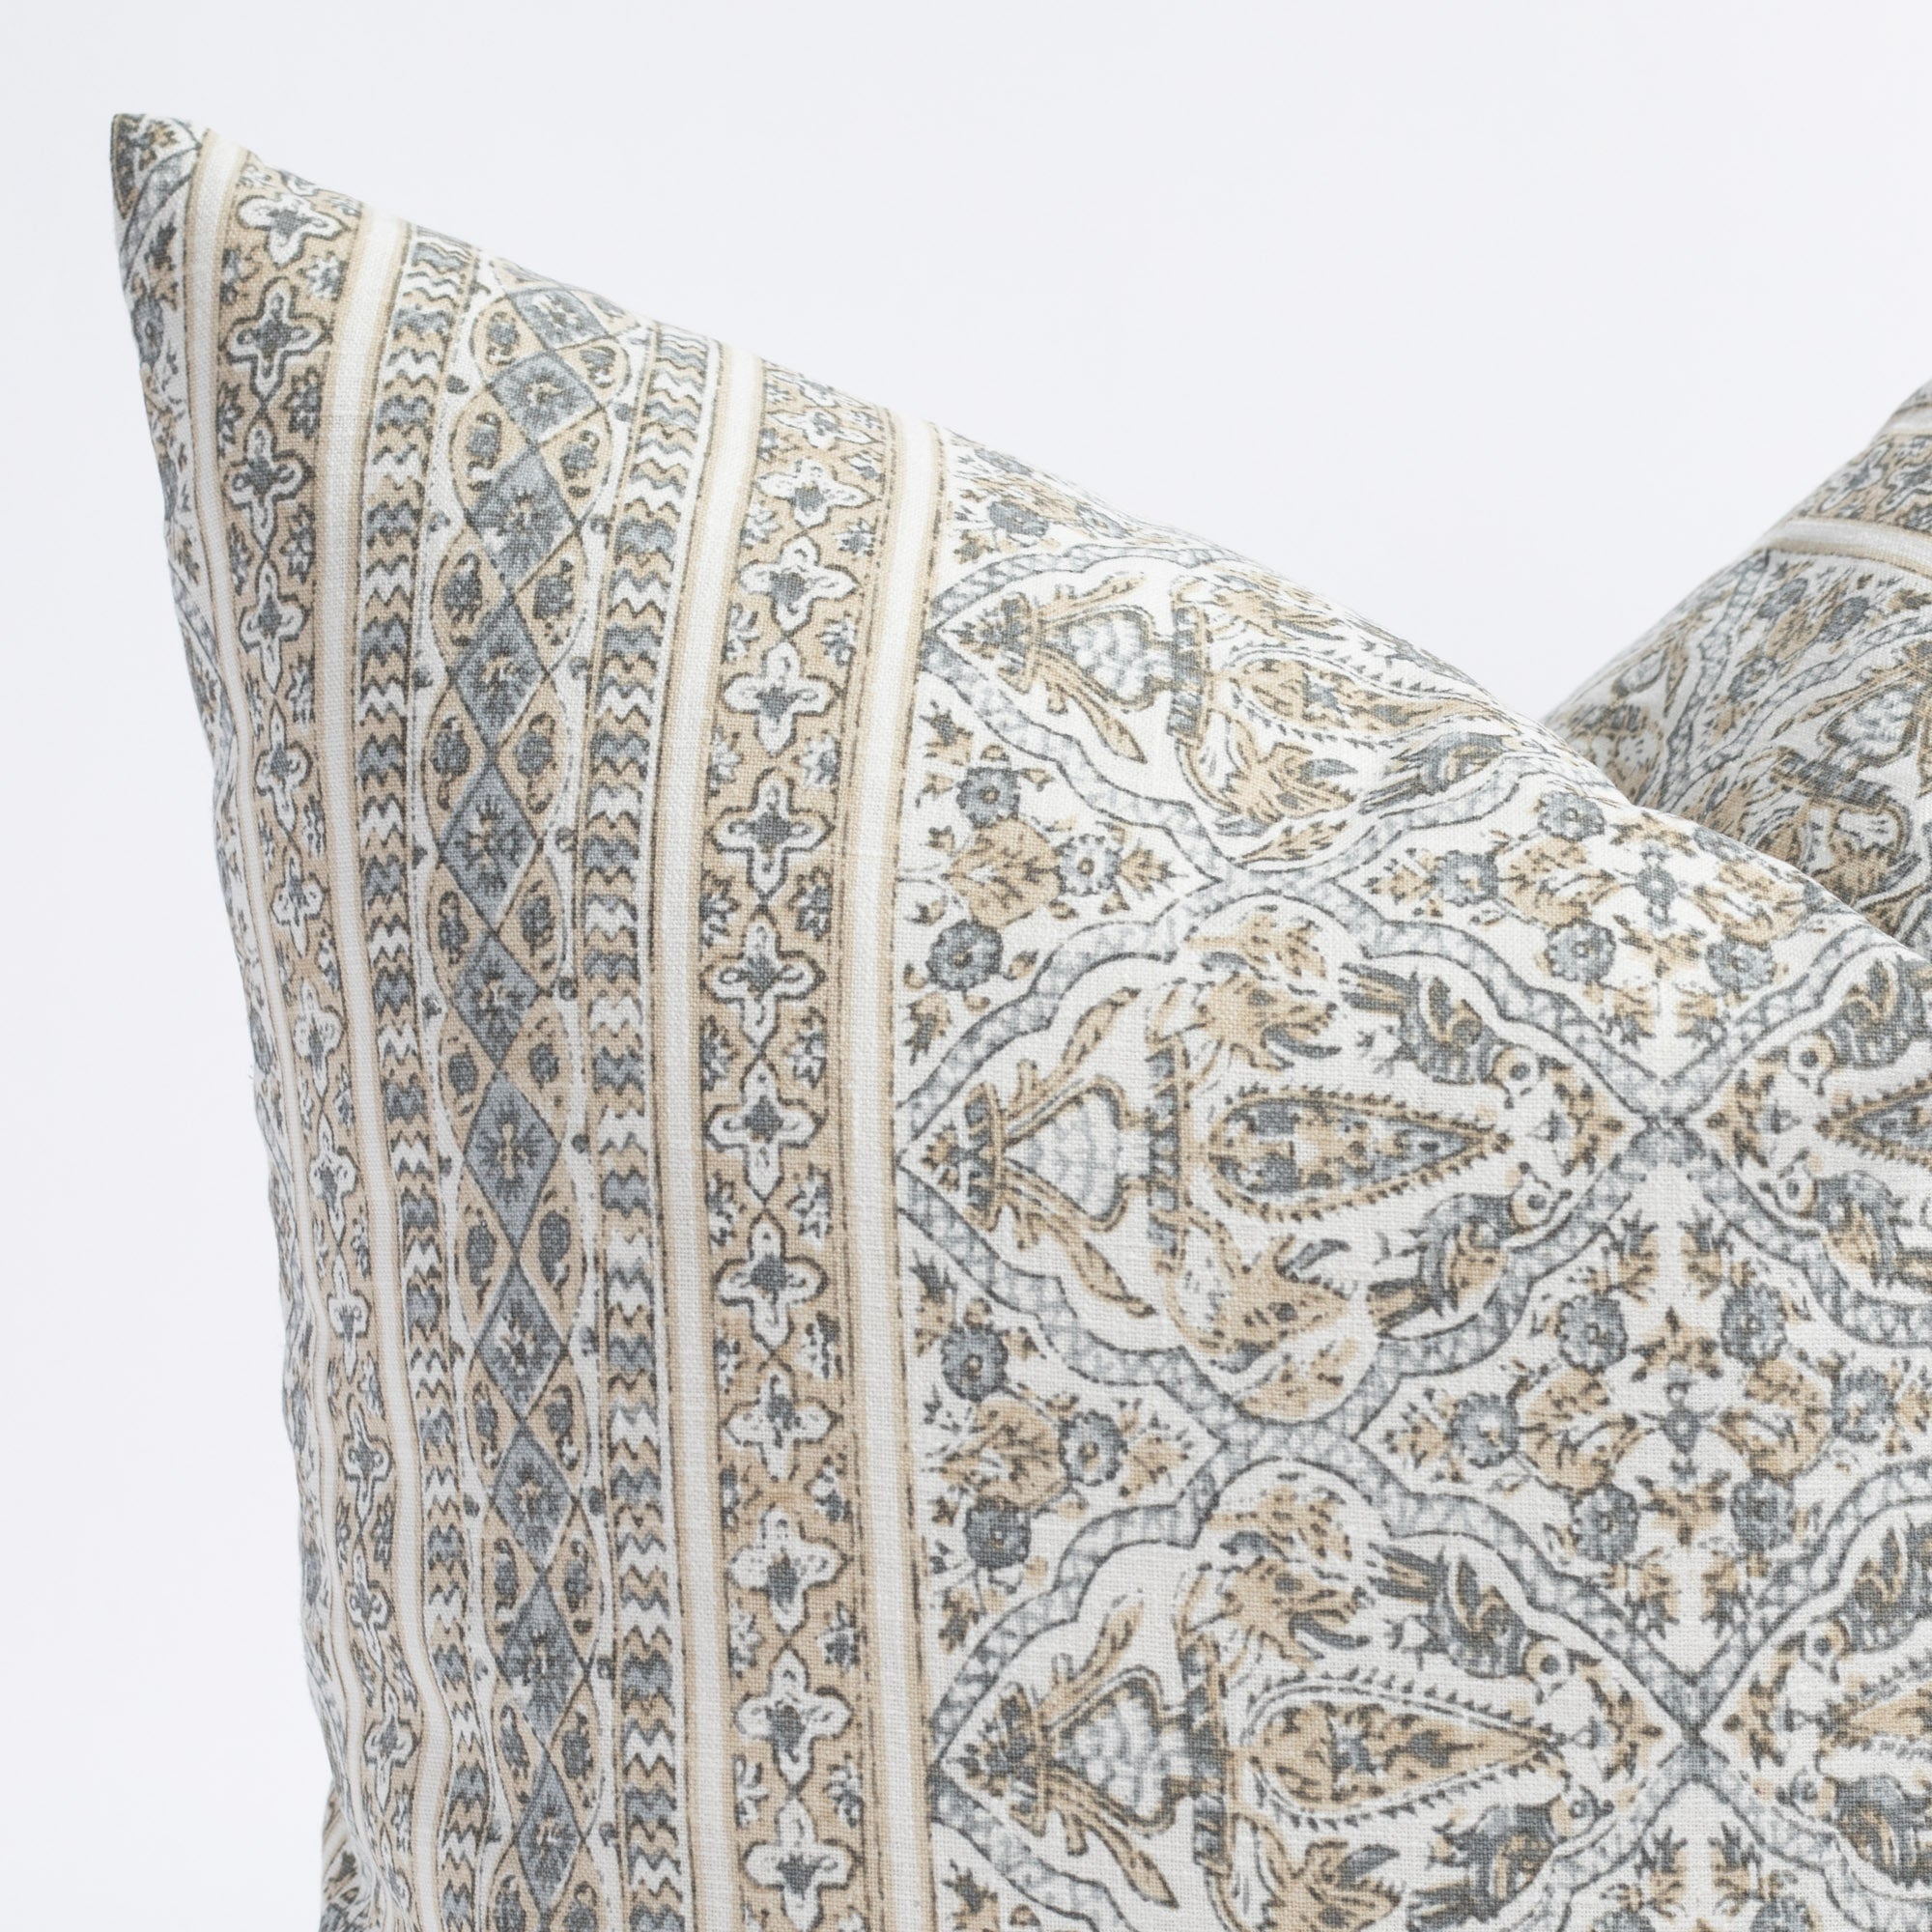 Lasha, a tan and light blue-grey block print throw pillow : close up view